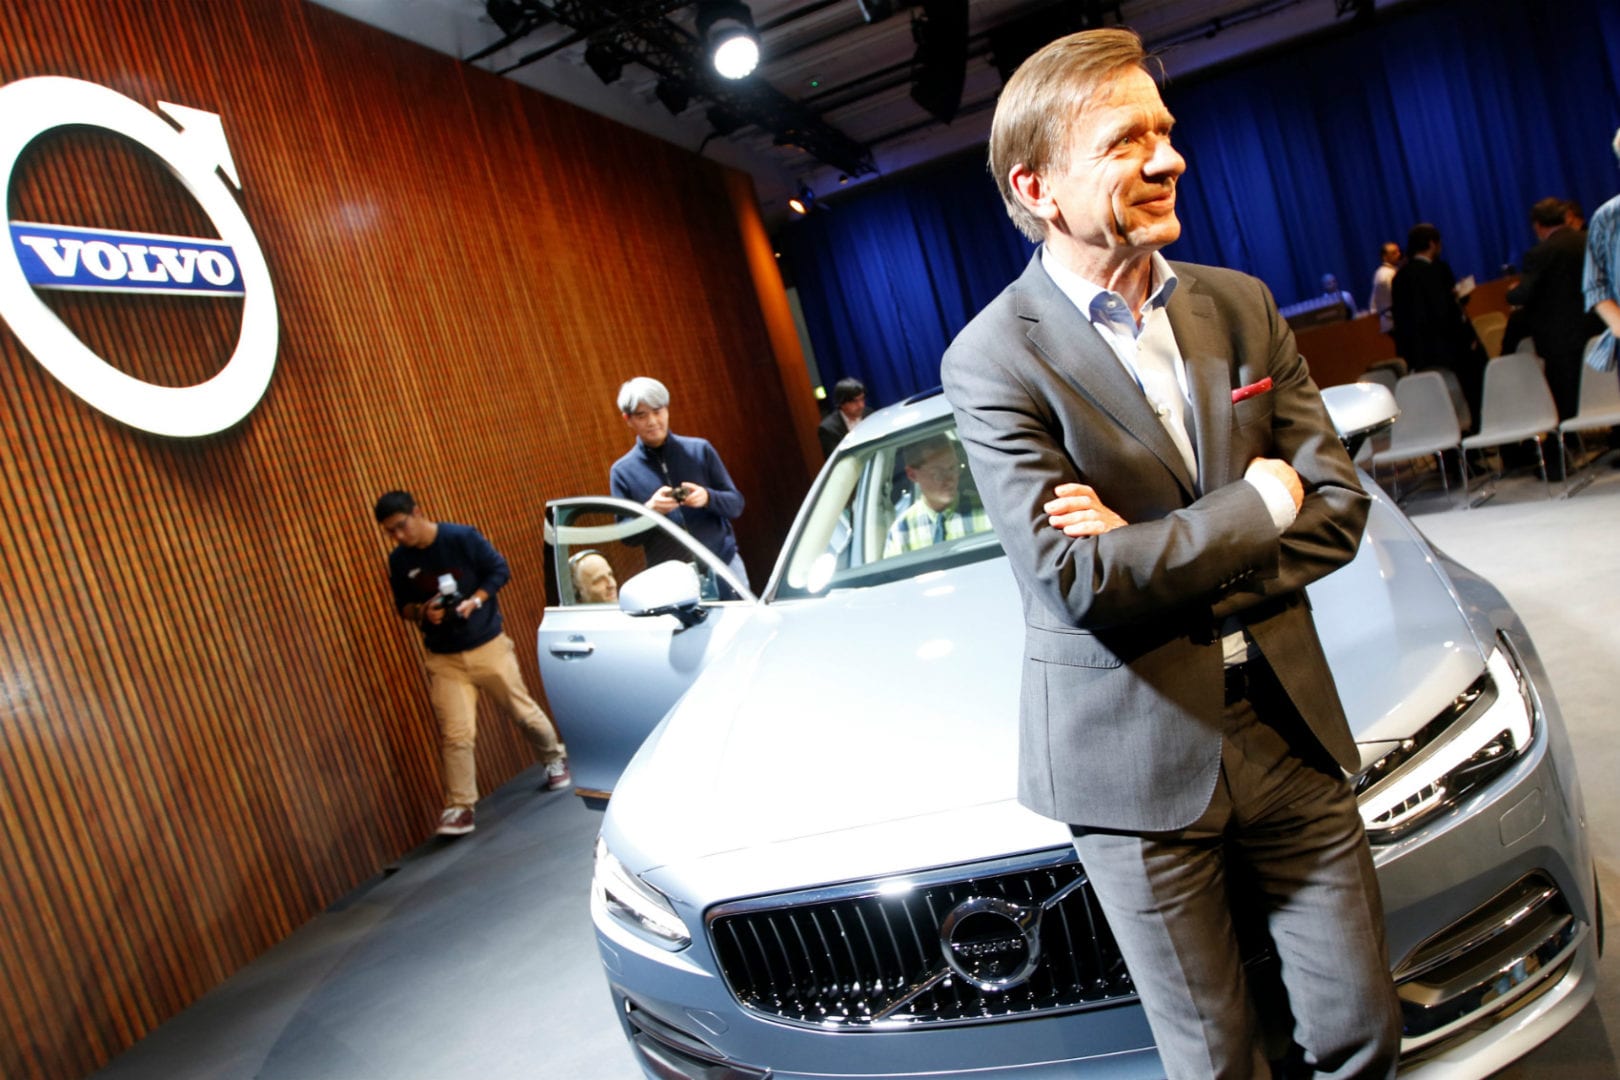 Para o CEO da Volvo, é preciso avançar na condução autónoma com cuidado